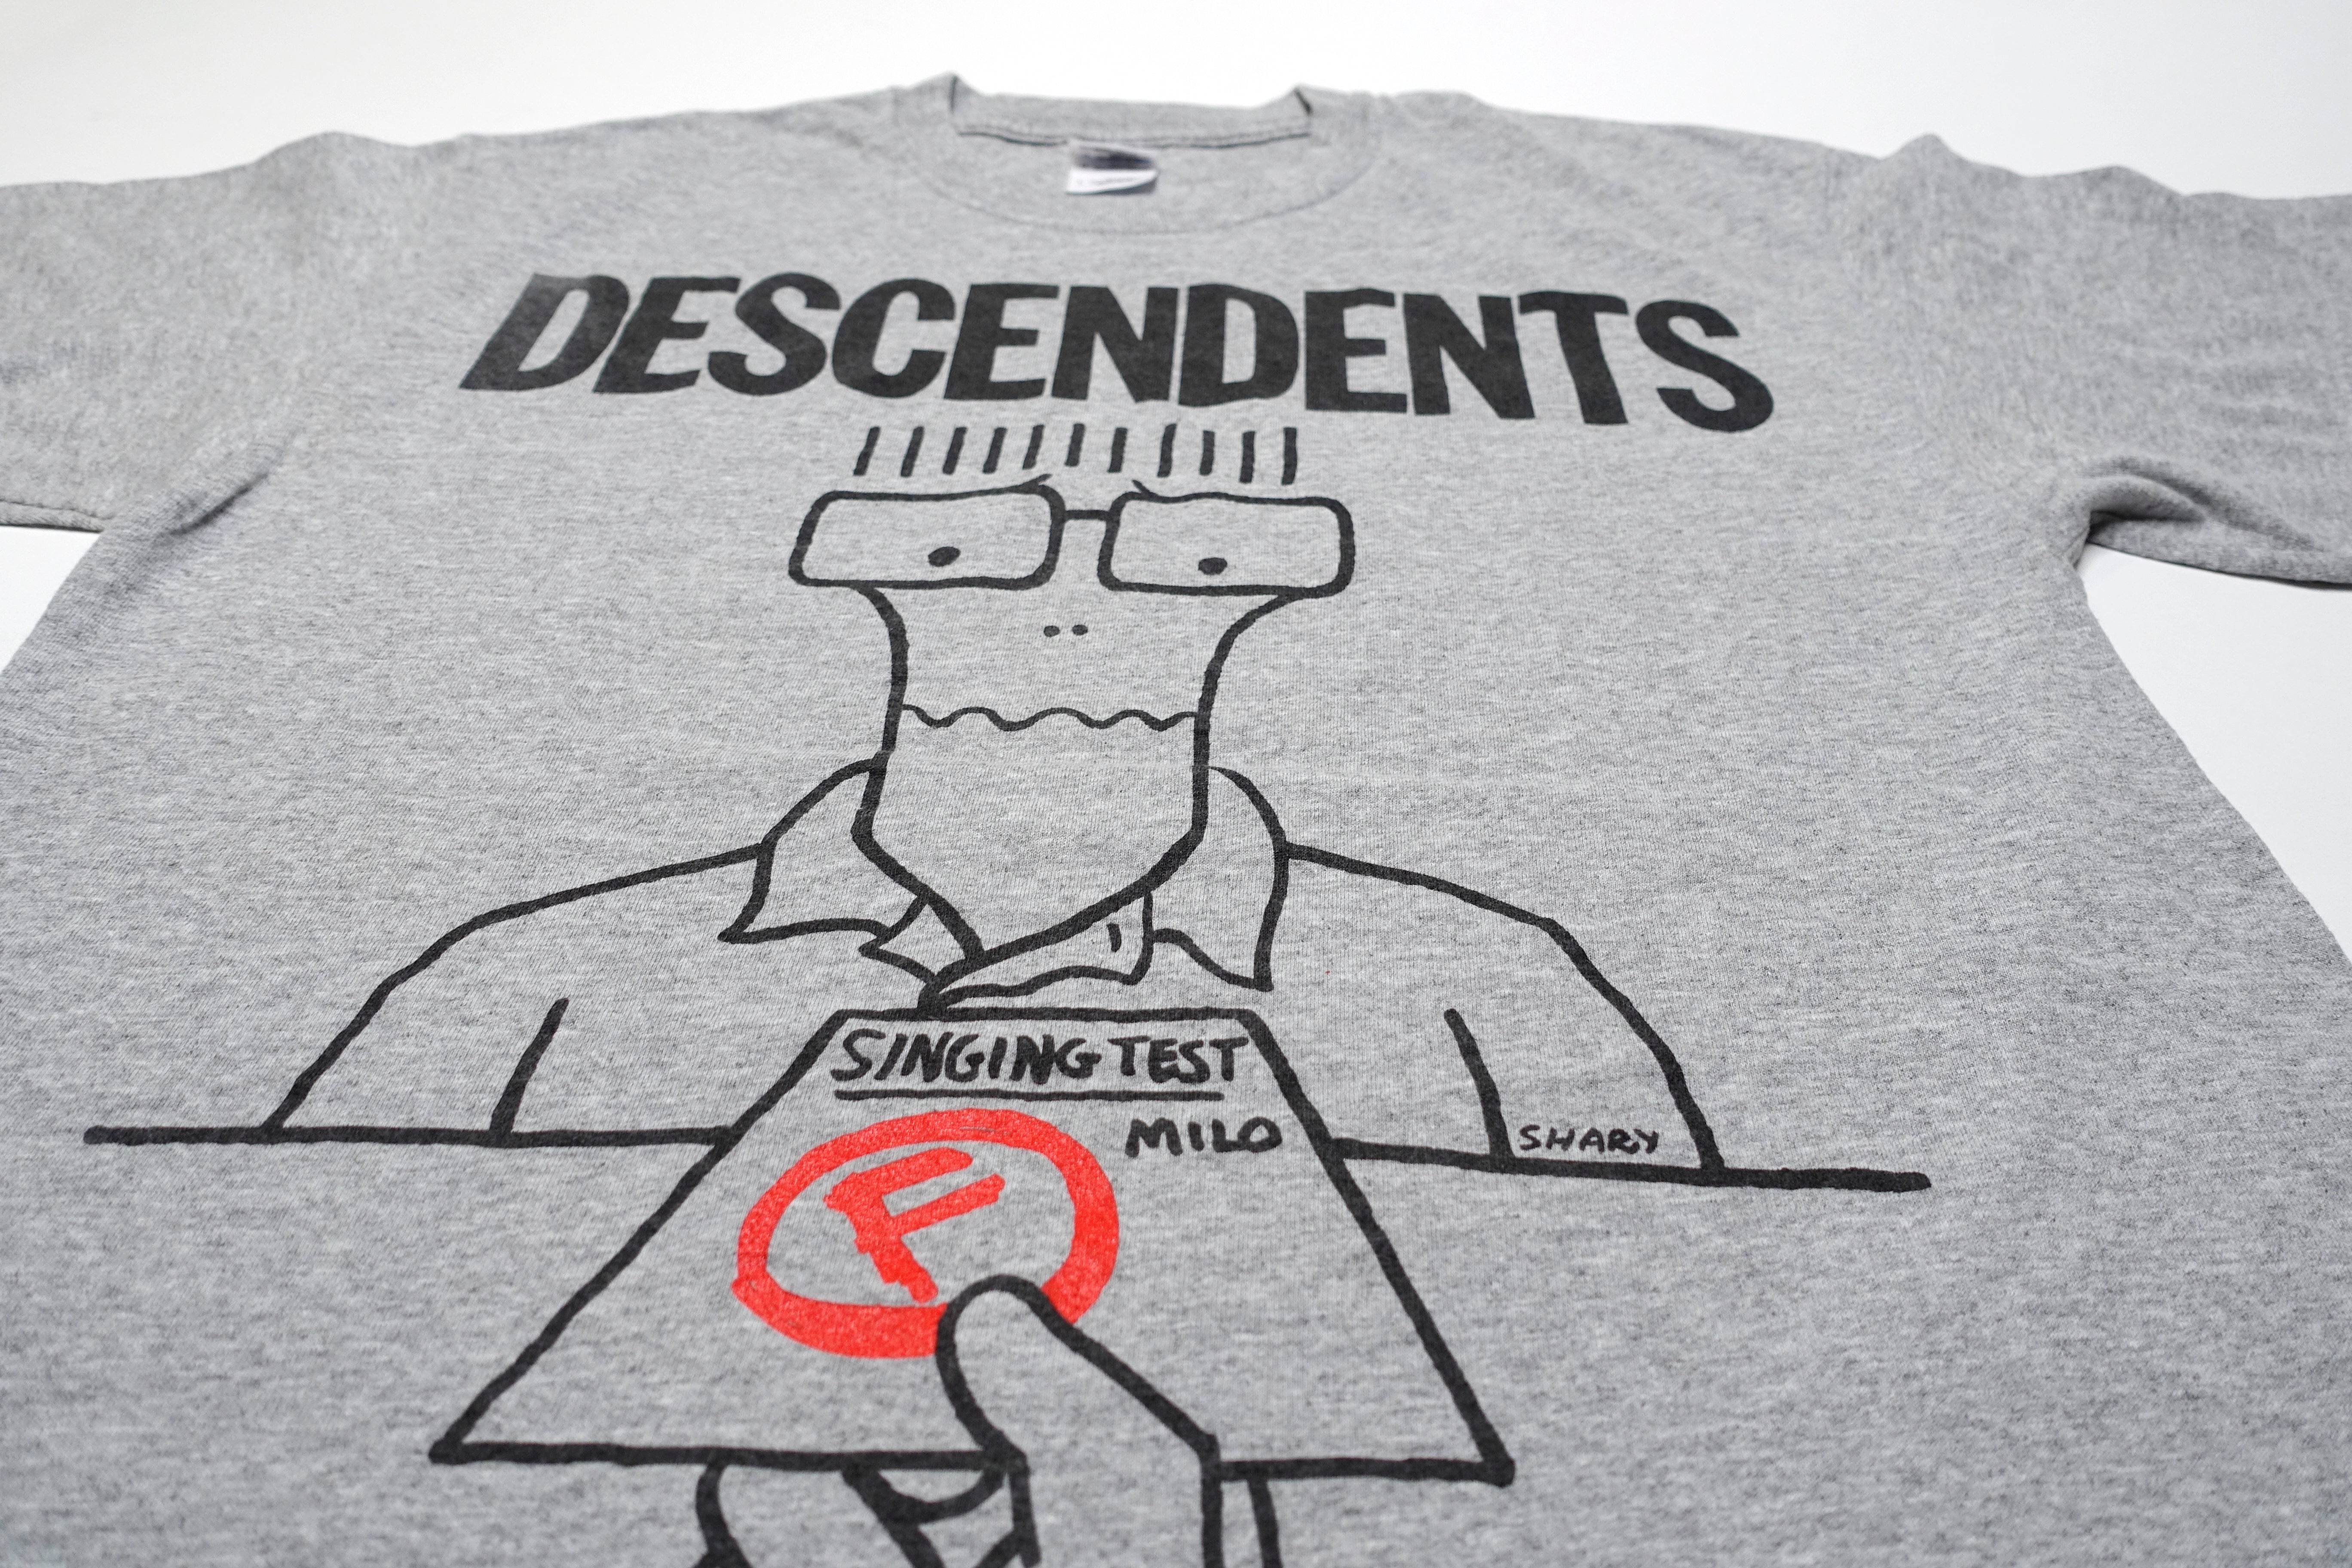 Descendents - Milo Flunks Out 2011 UK Tour Shirt Size Large